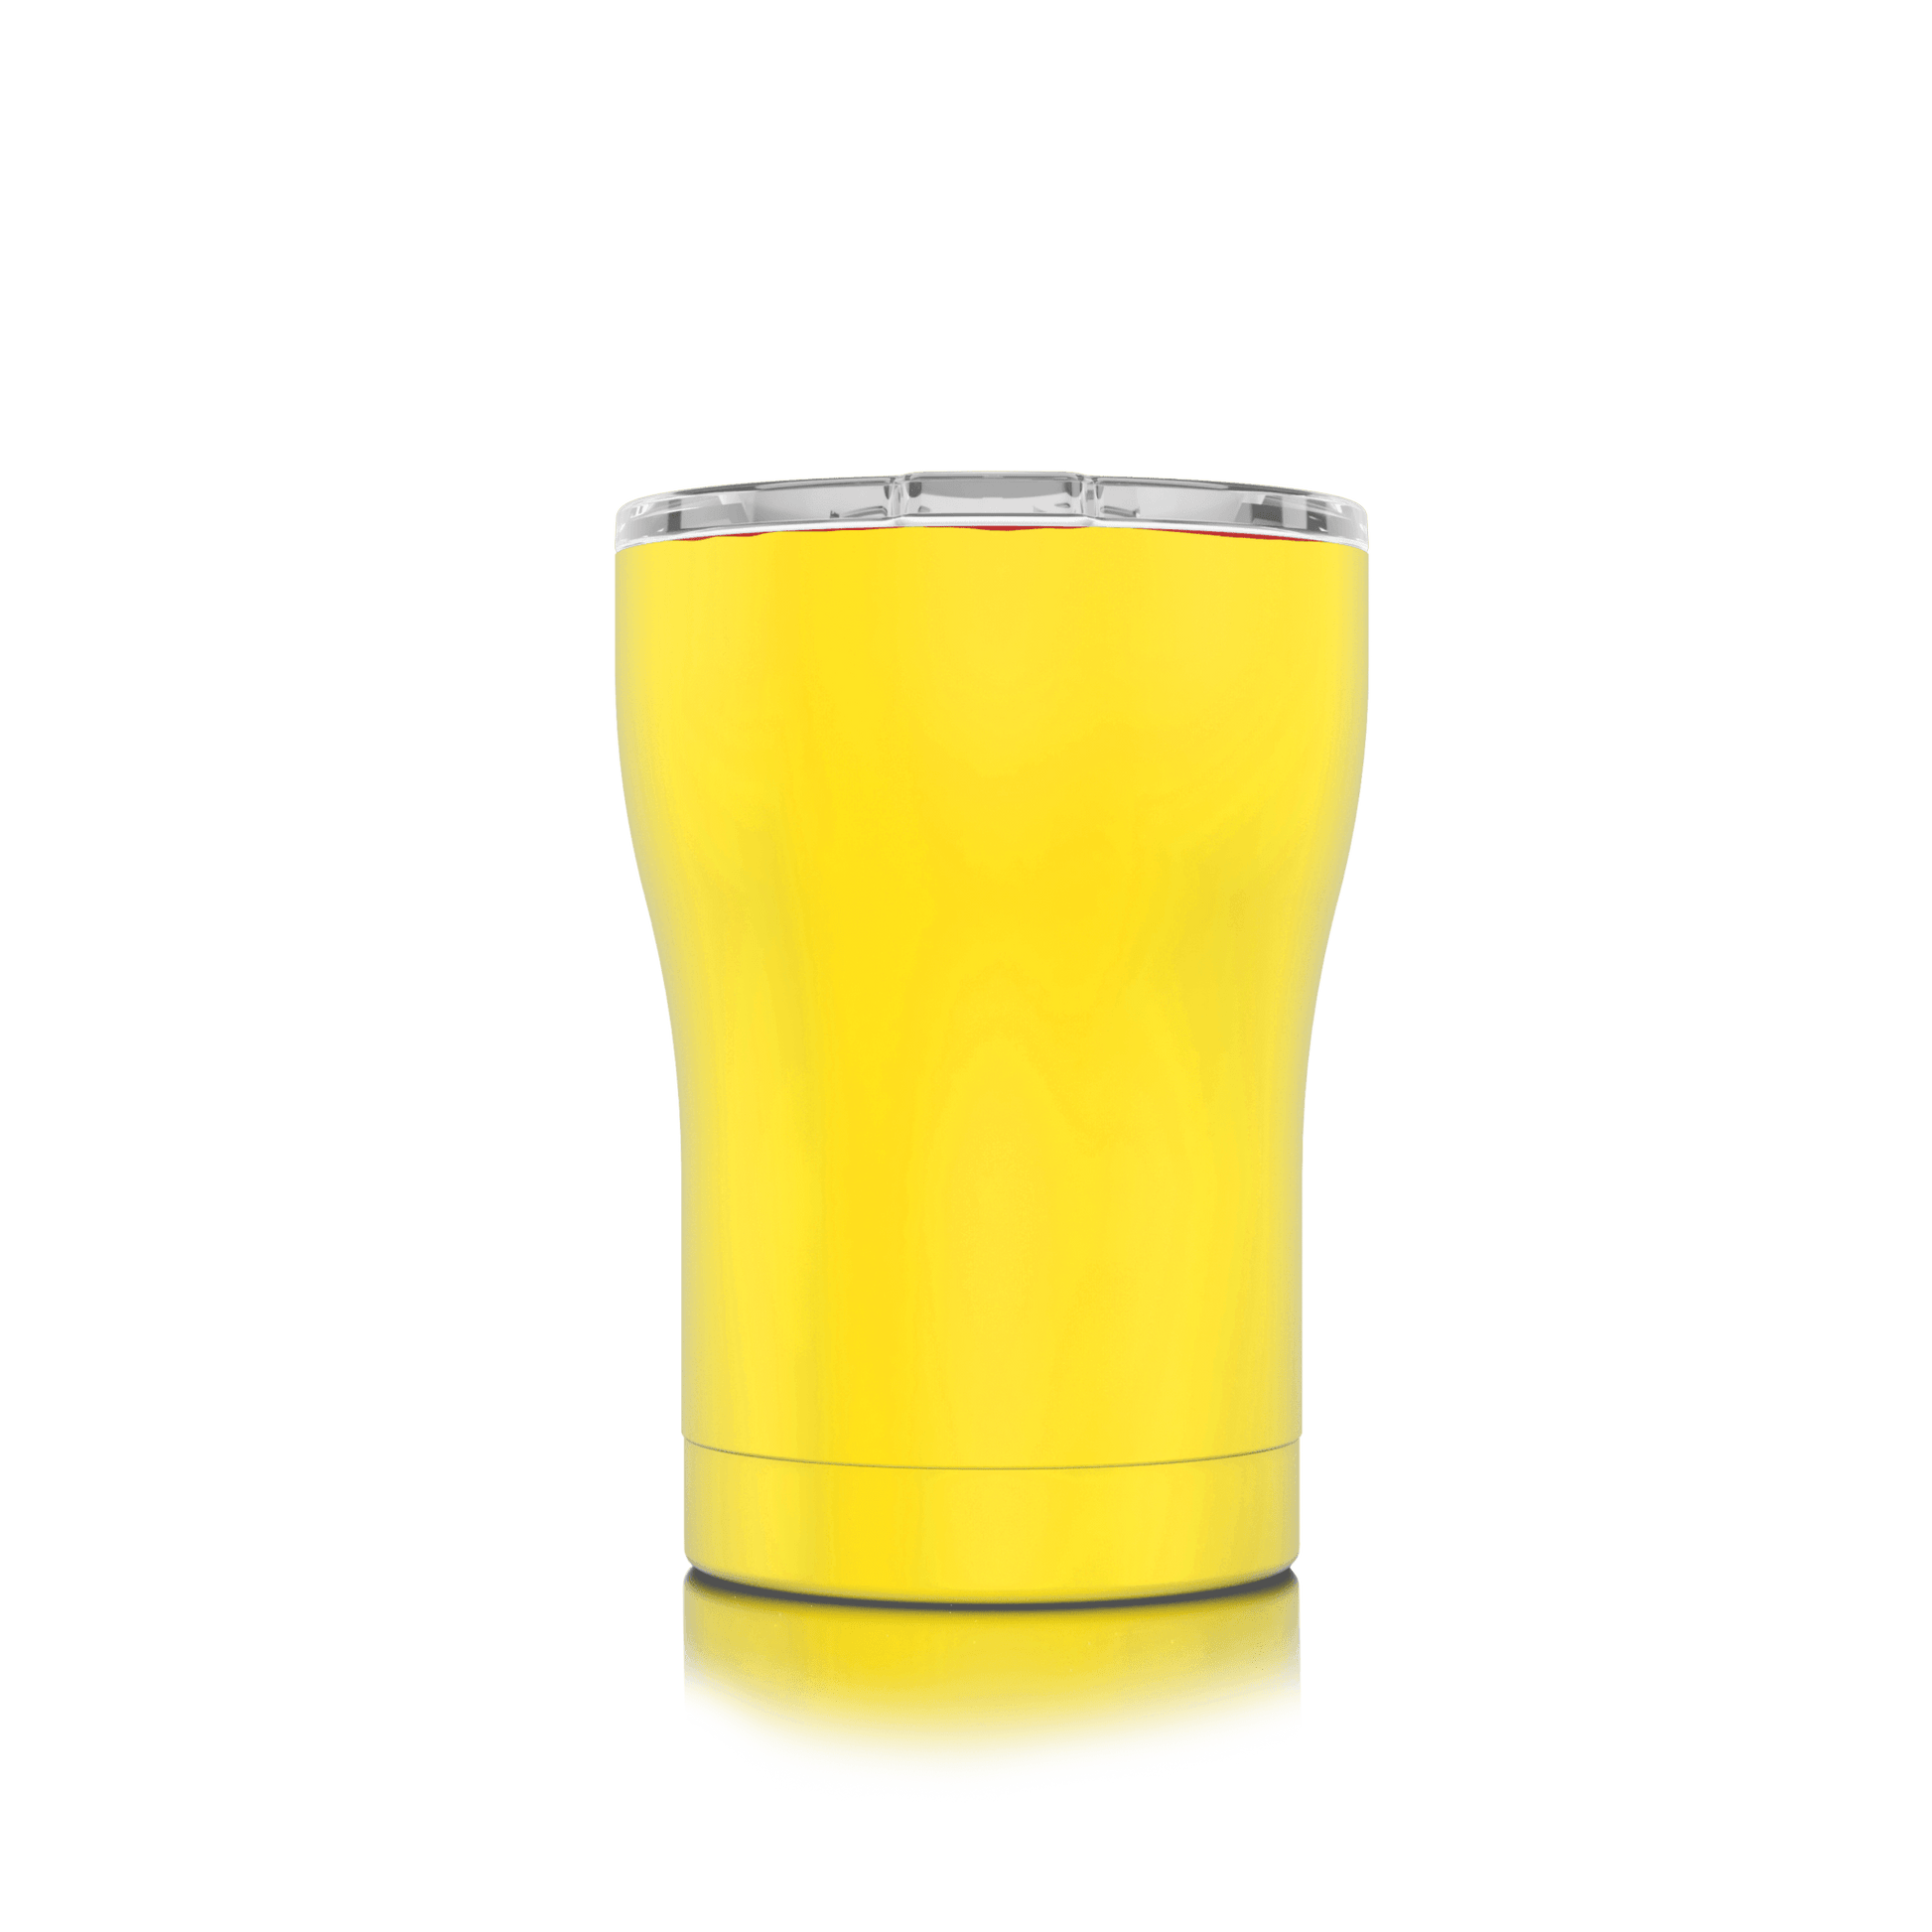 SIC 12 oz Tumbler - Beverage Companion (Multiple Color Options) - Perfect Etch